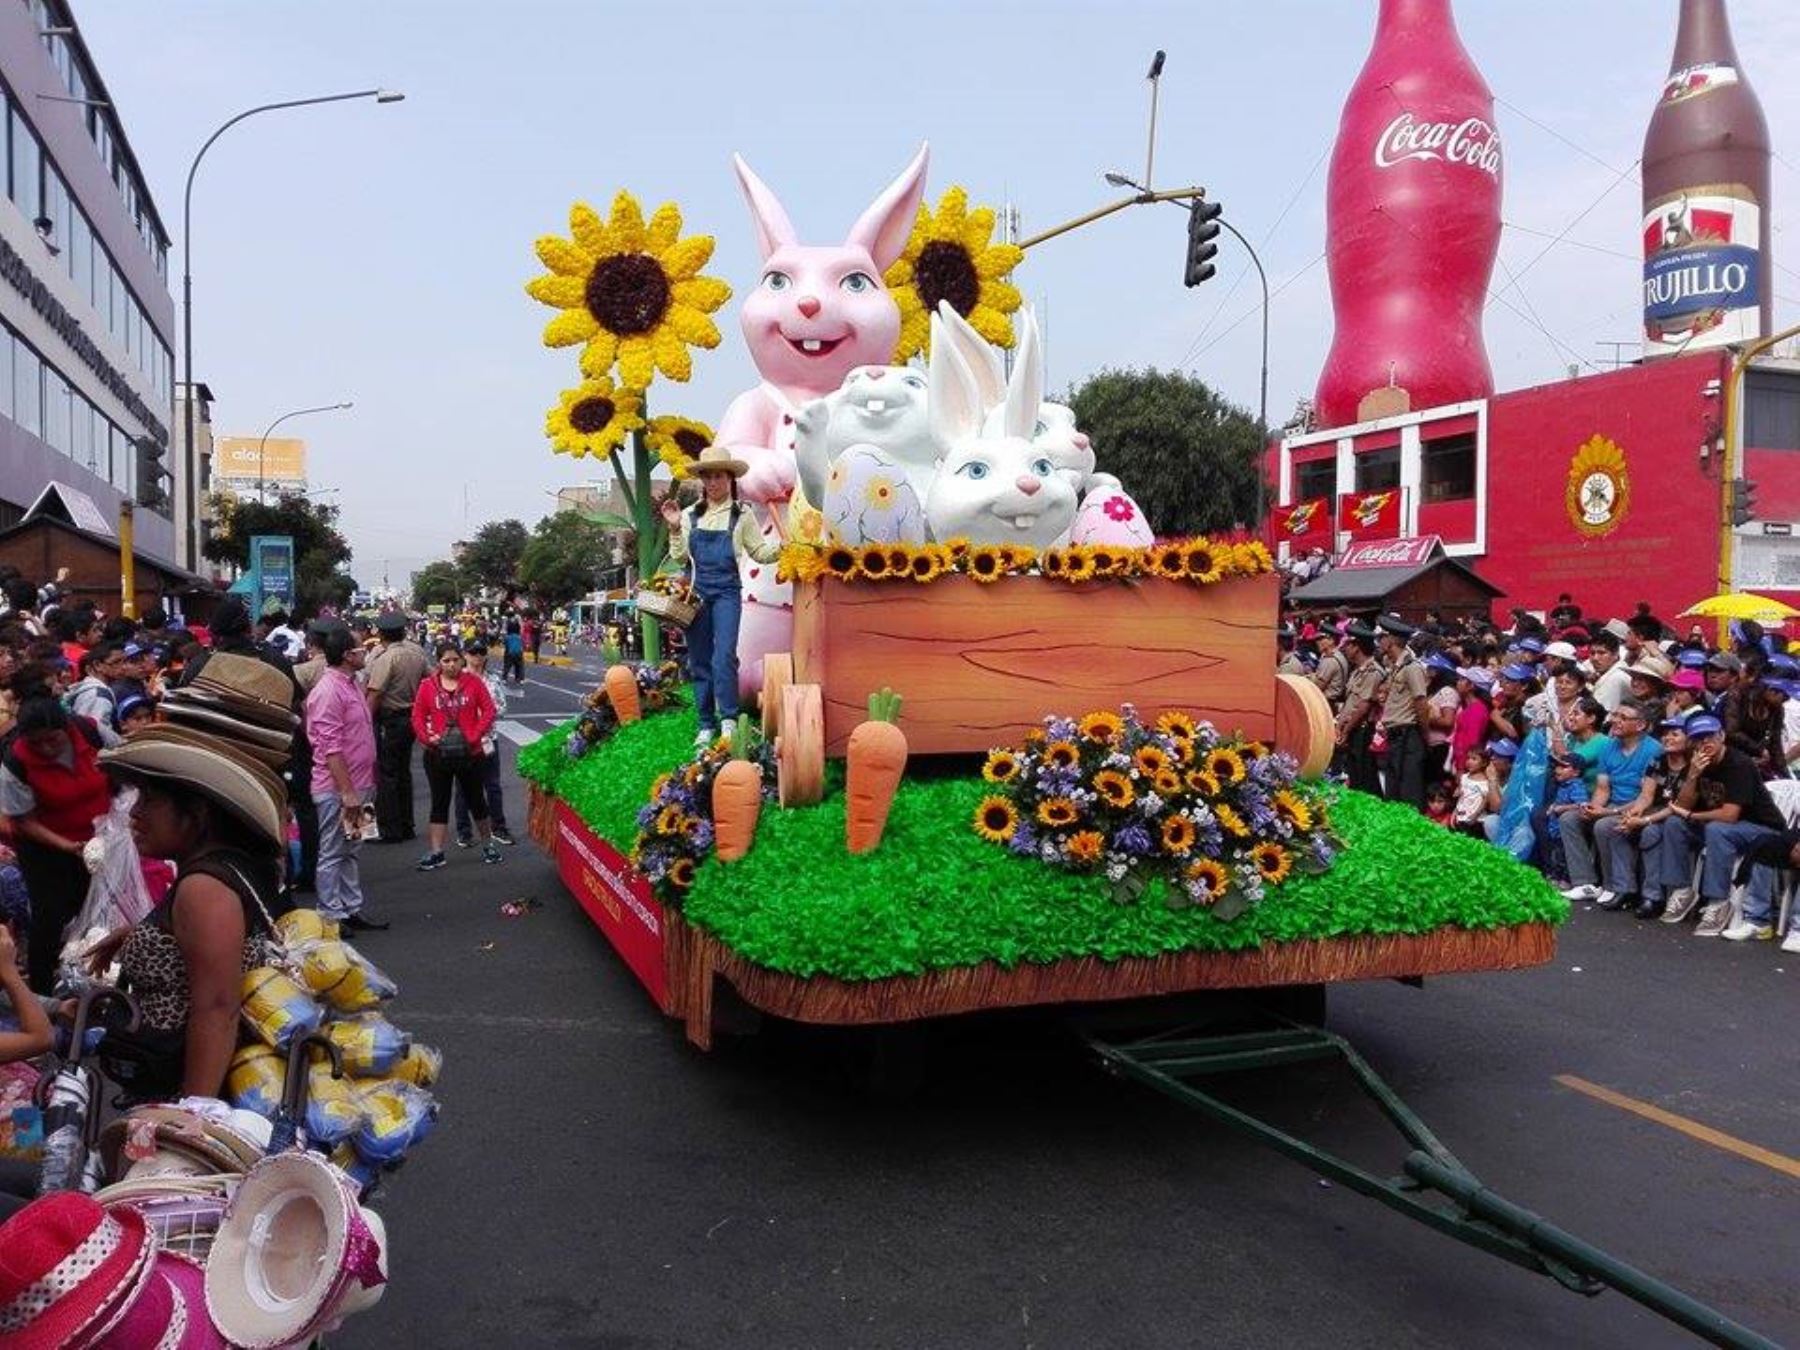 Estiman llegada de 50,000 turistas a Trujillo por el Festival de la Primavera. ANDINA